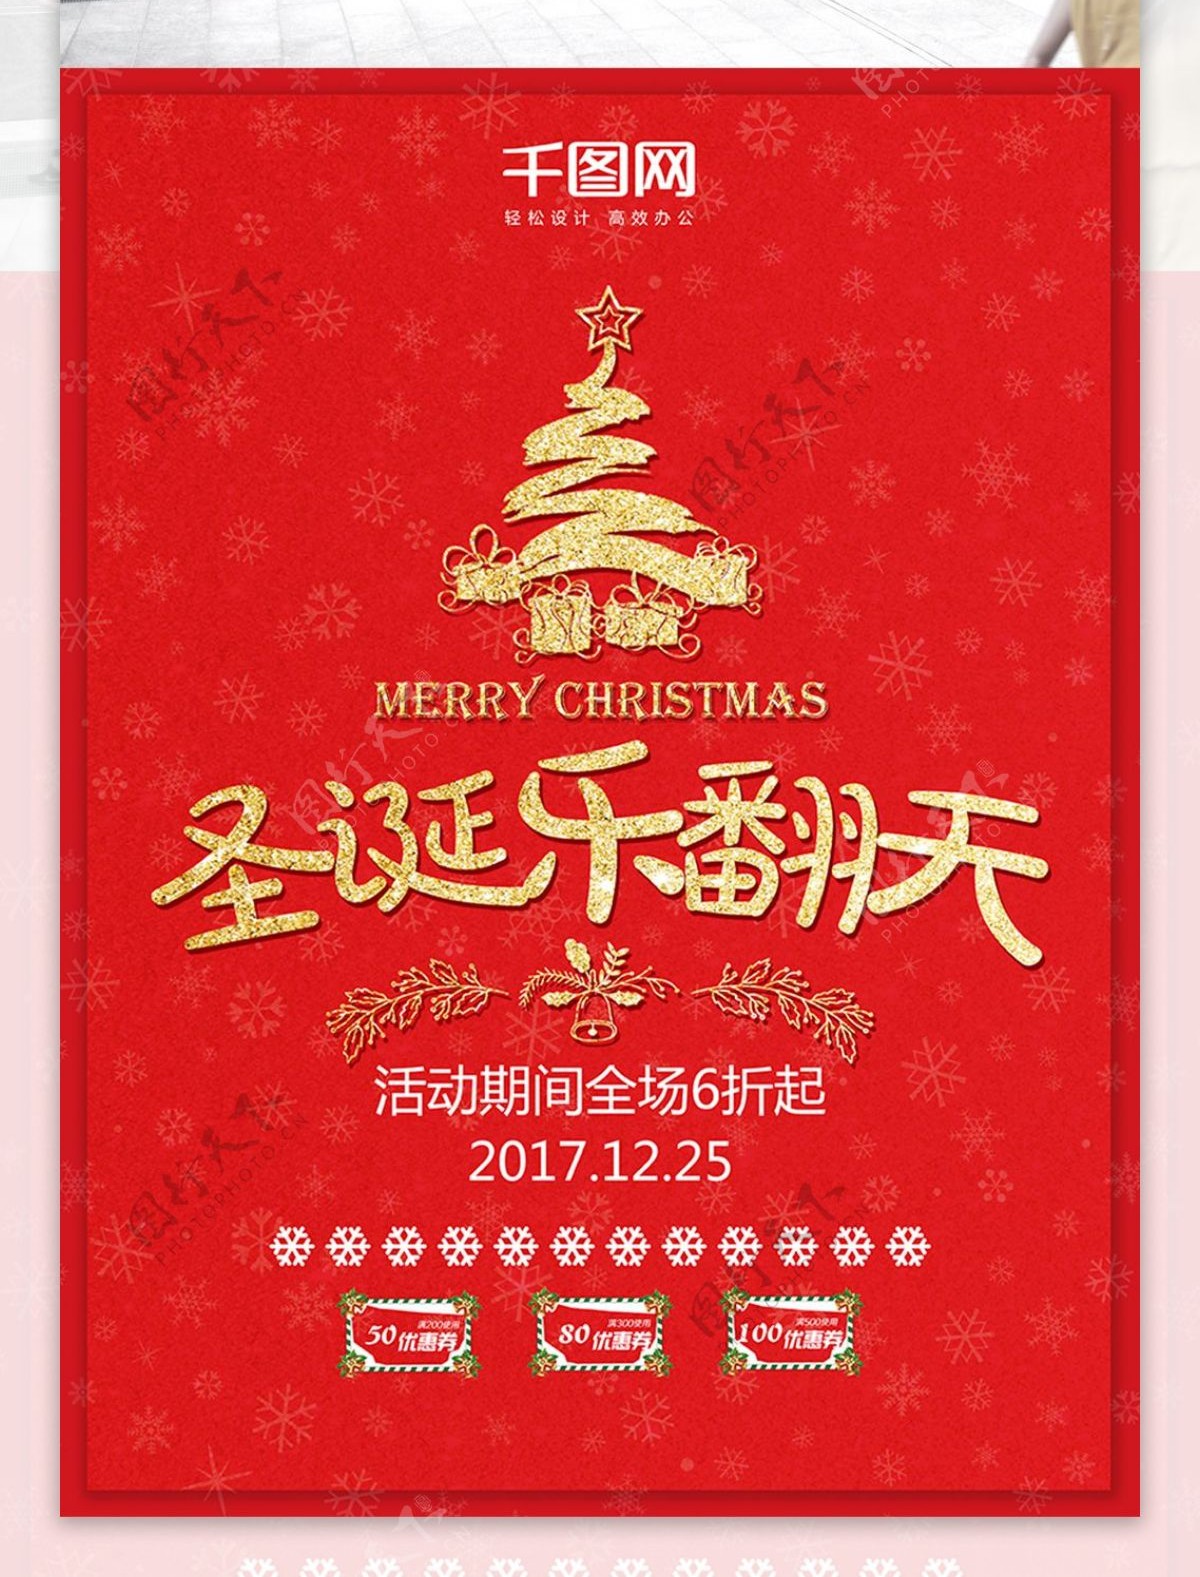 圣诞乐翻天红色喜庆促销海报配图PSD模板